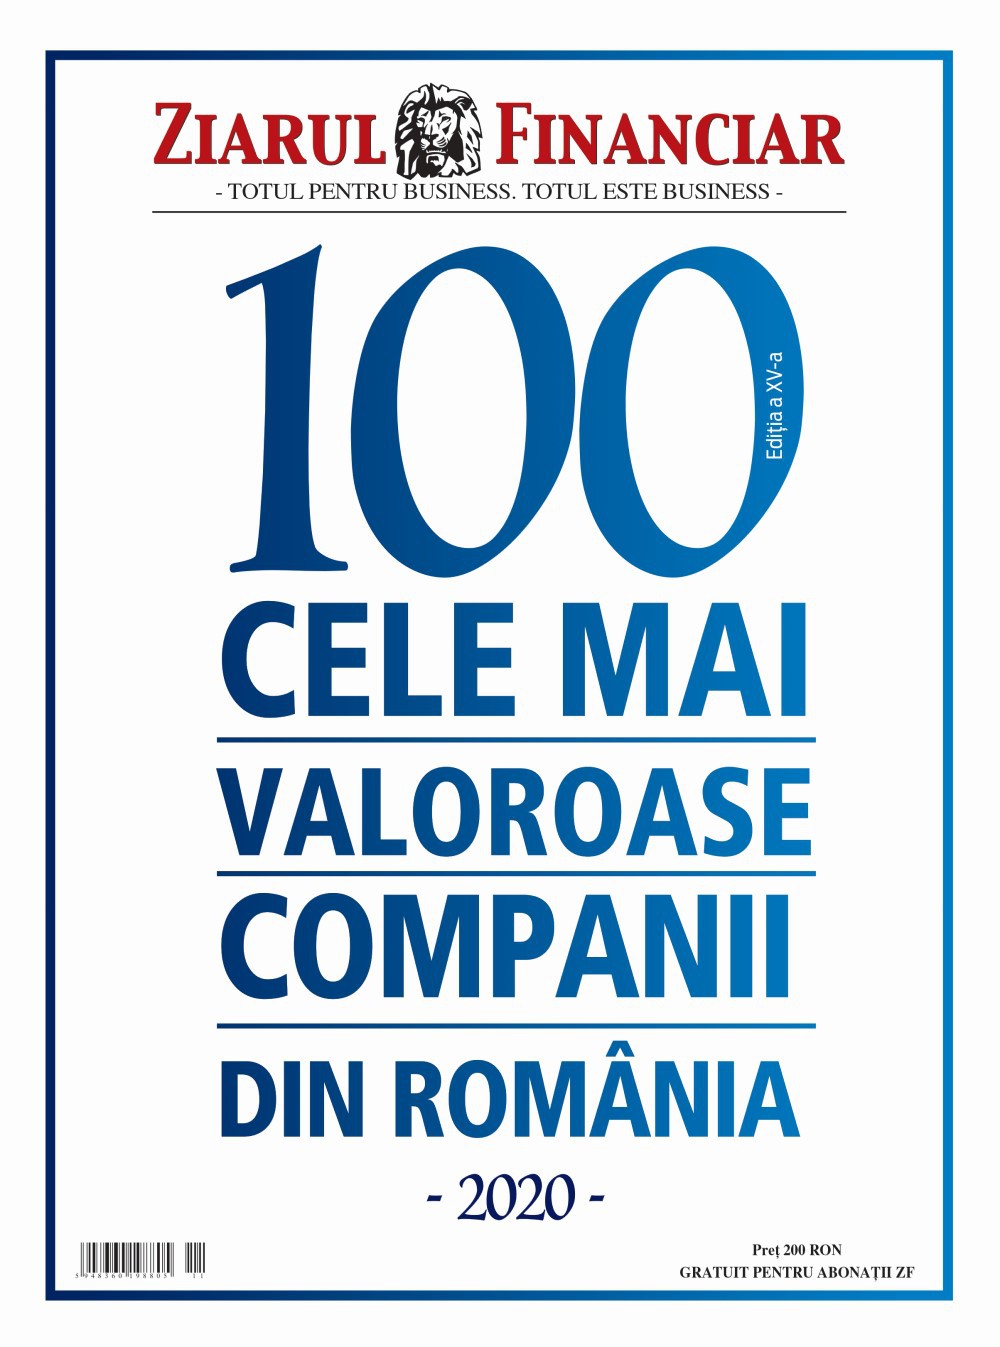 Urmează Gala ZF 2020 - Traversăm împreună criza: care sunt cele mai valoroase zece companii din România. Trei companii noi intră în Top 10 cele mai valoroase businessuri locale în 2020, un an al premierelor pentru catalogul realizat de Ziarul Financiar şi ajuns la ediţia a -XV-a